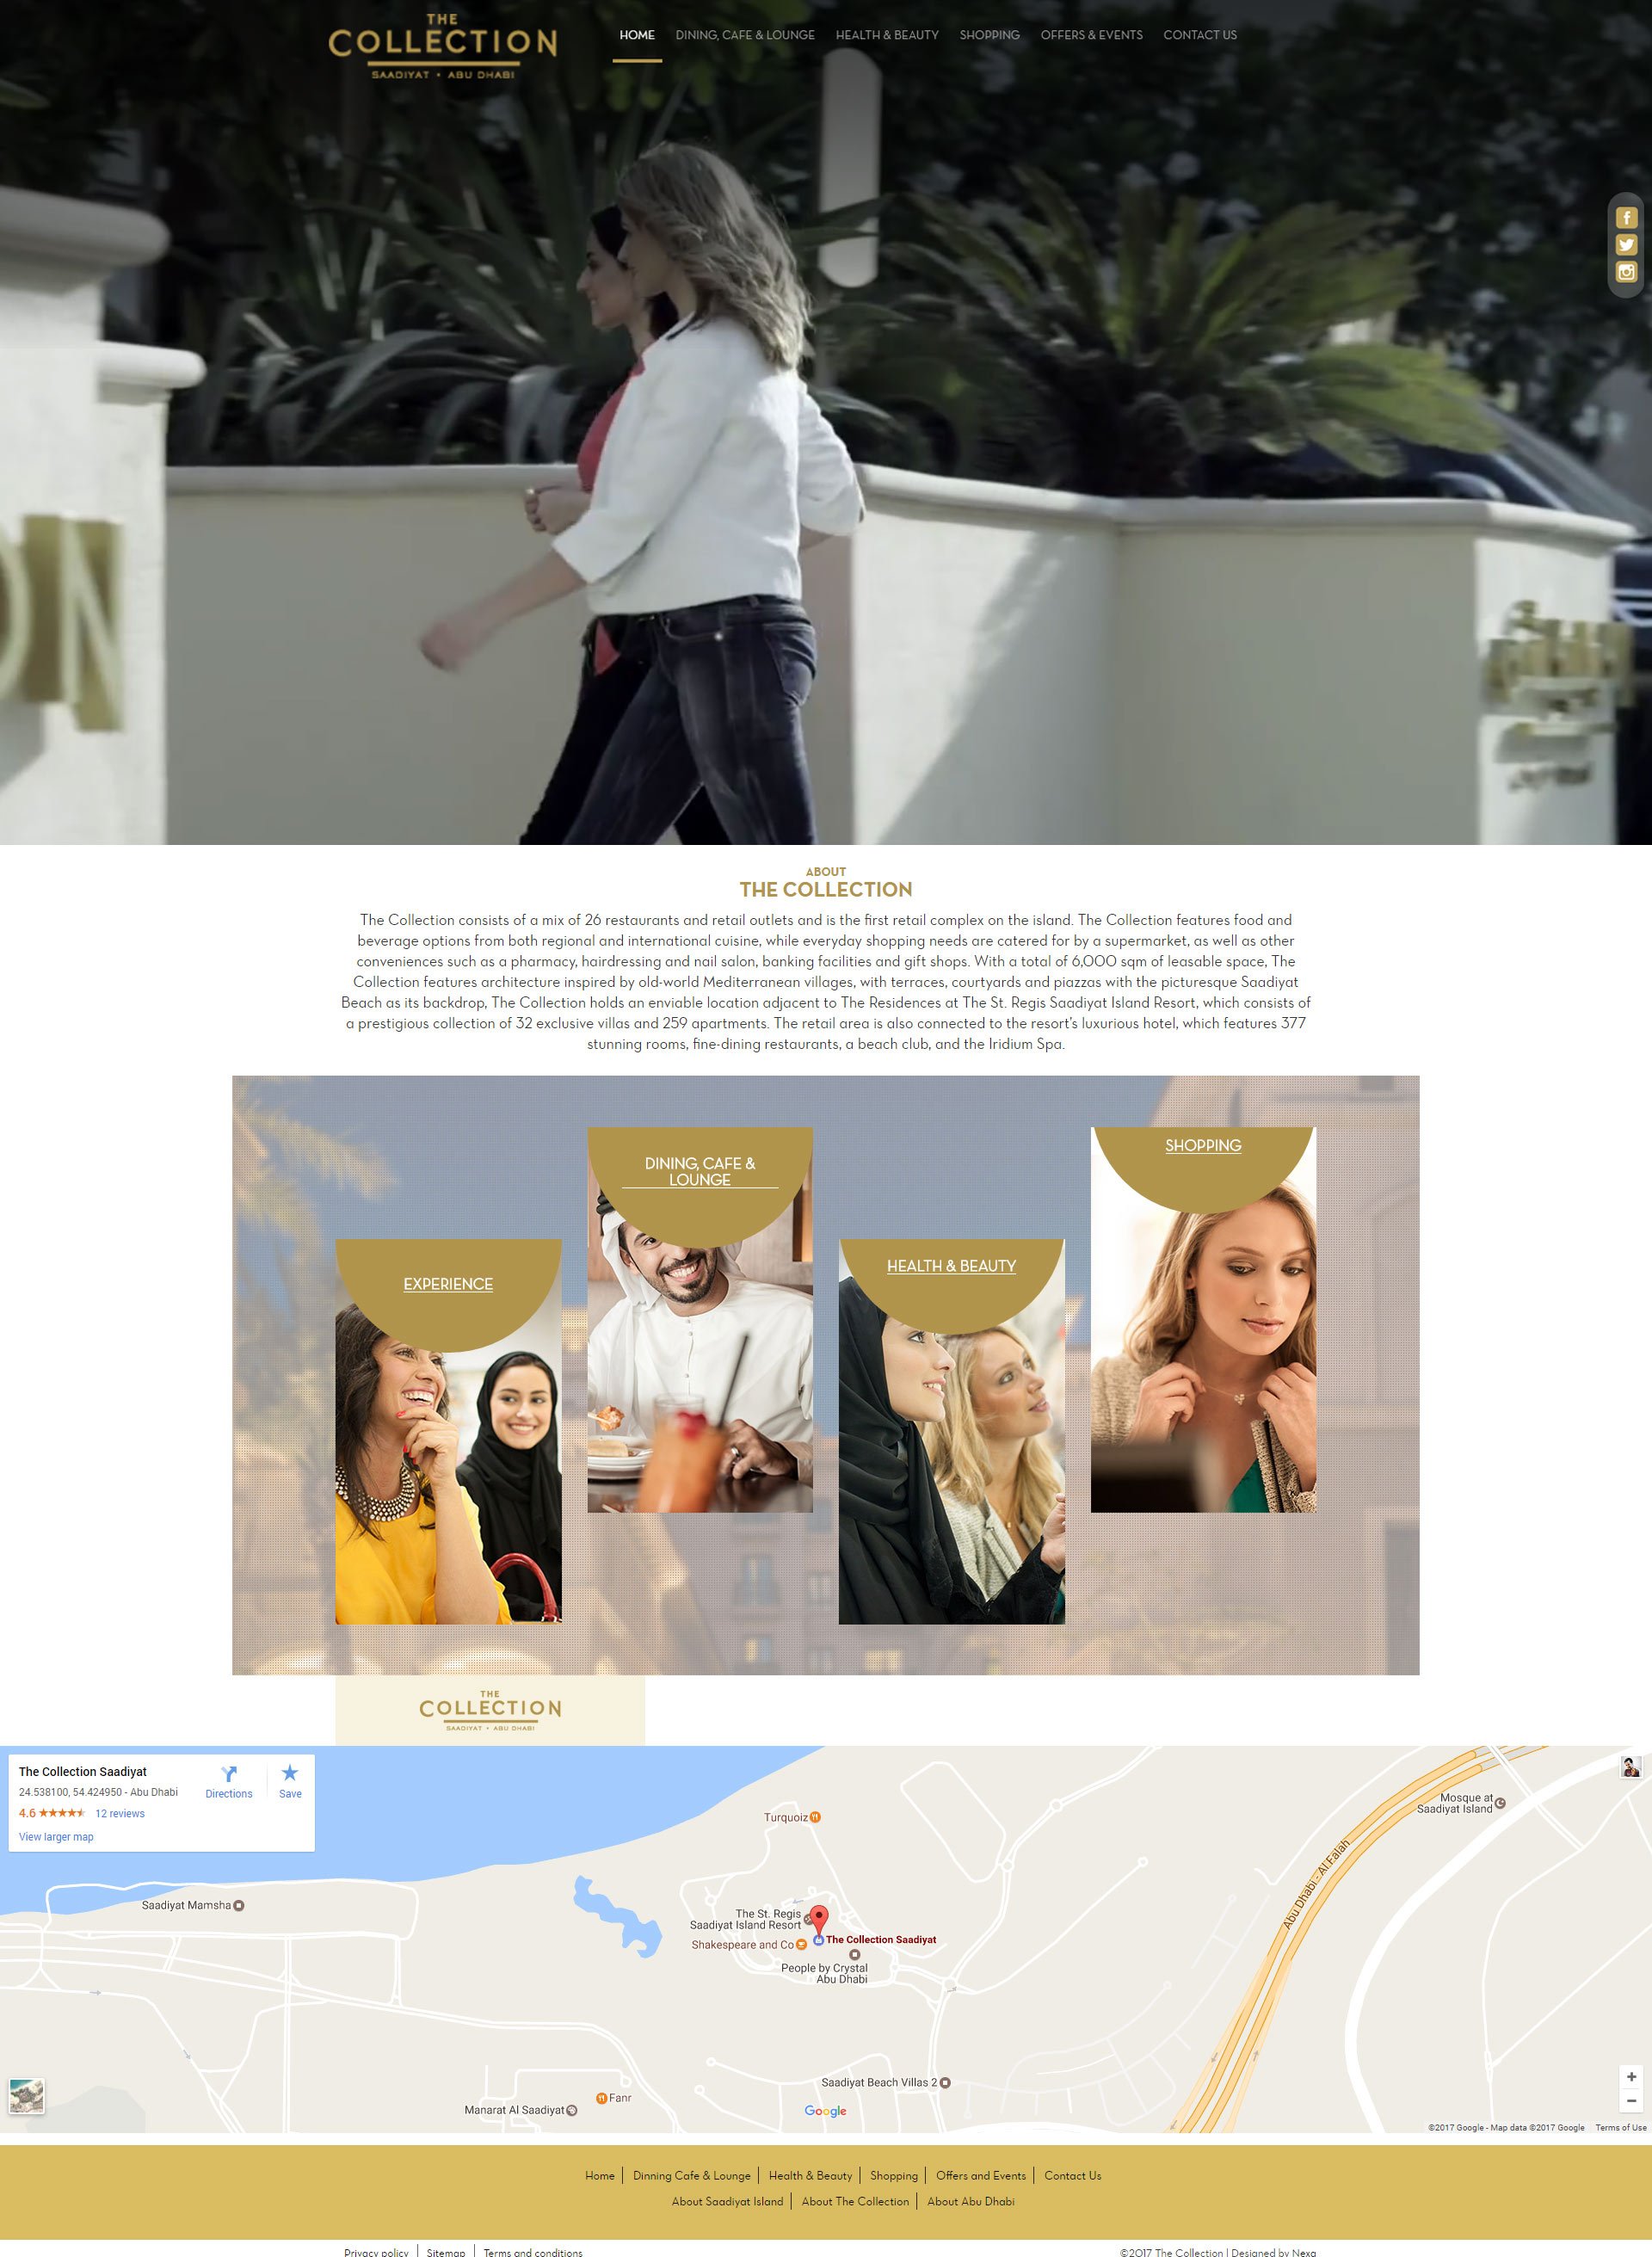 The Collection Website by Nexa, Dubai